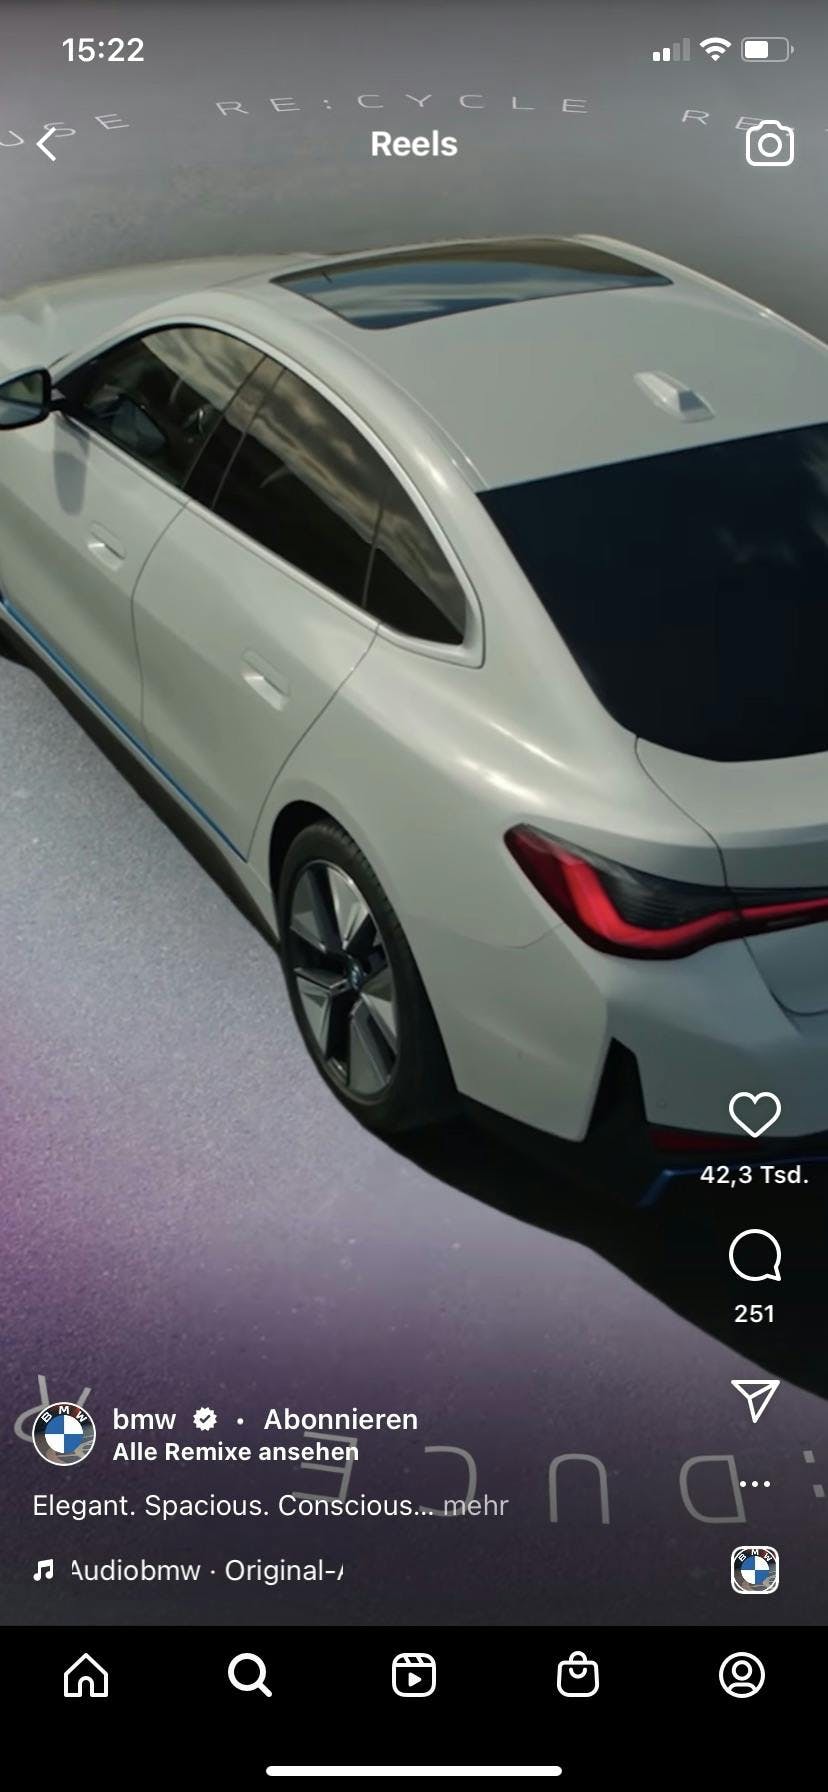 Reel von BMW auf Instagram